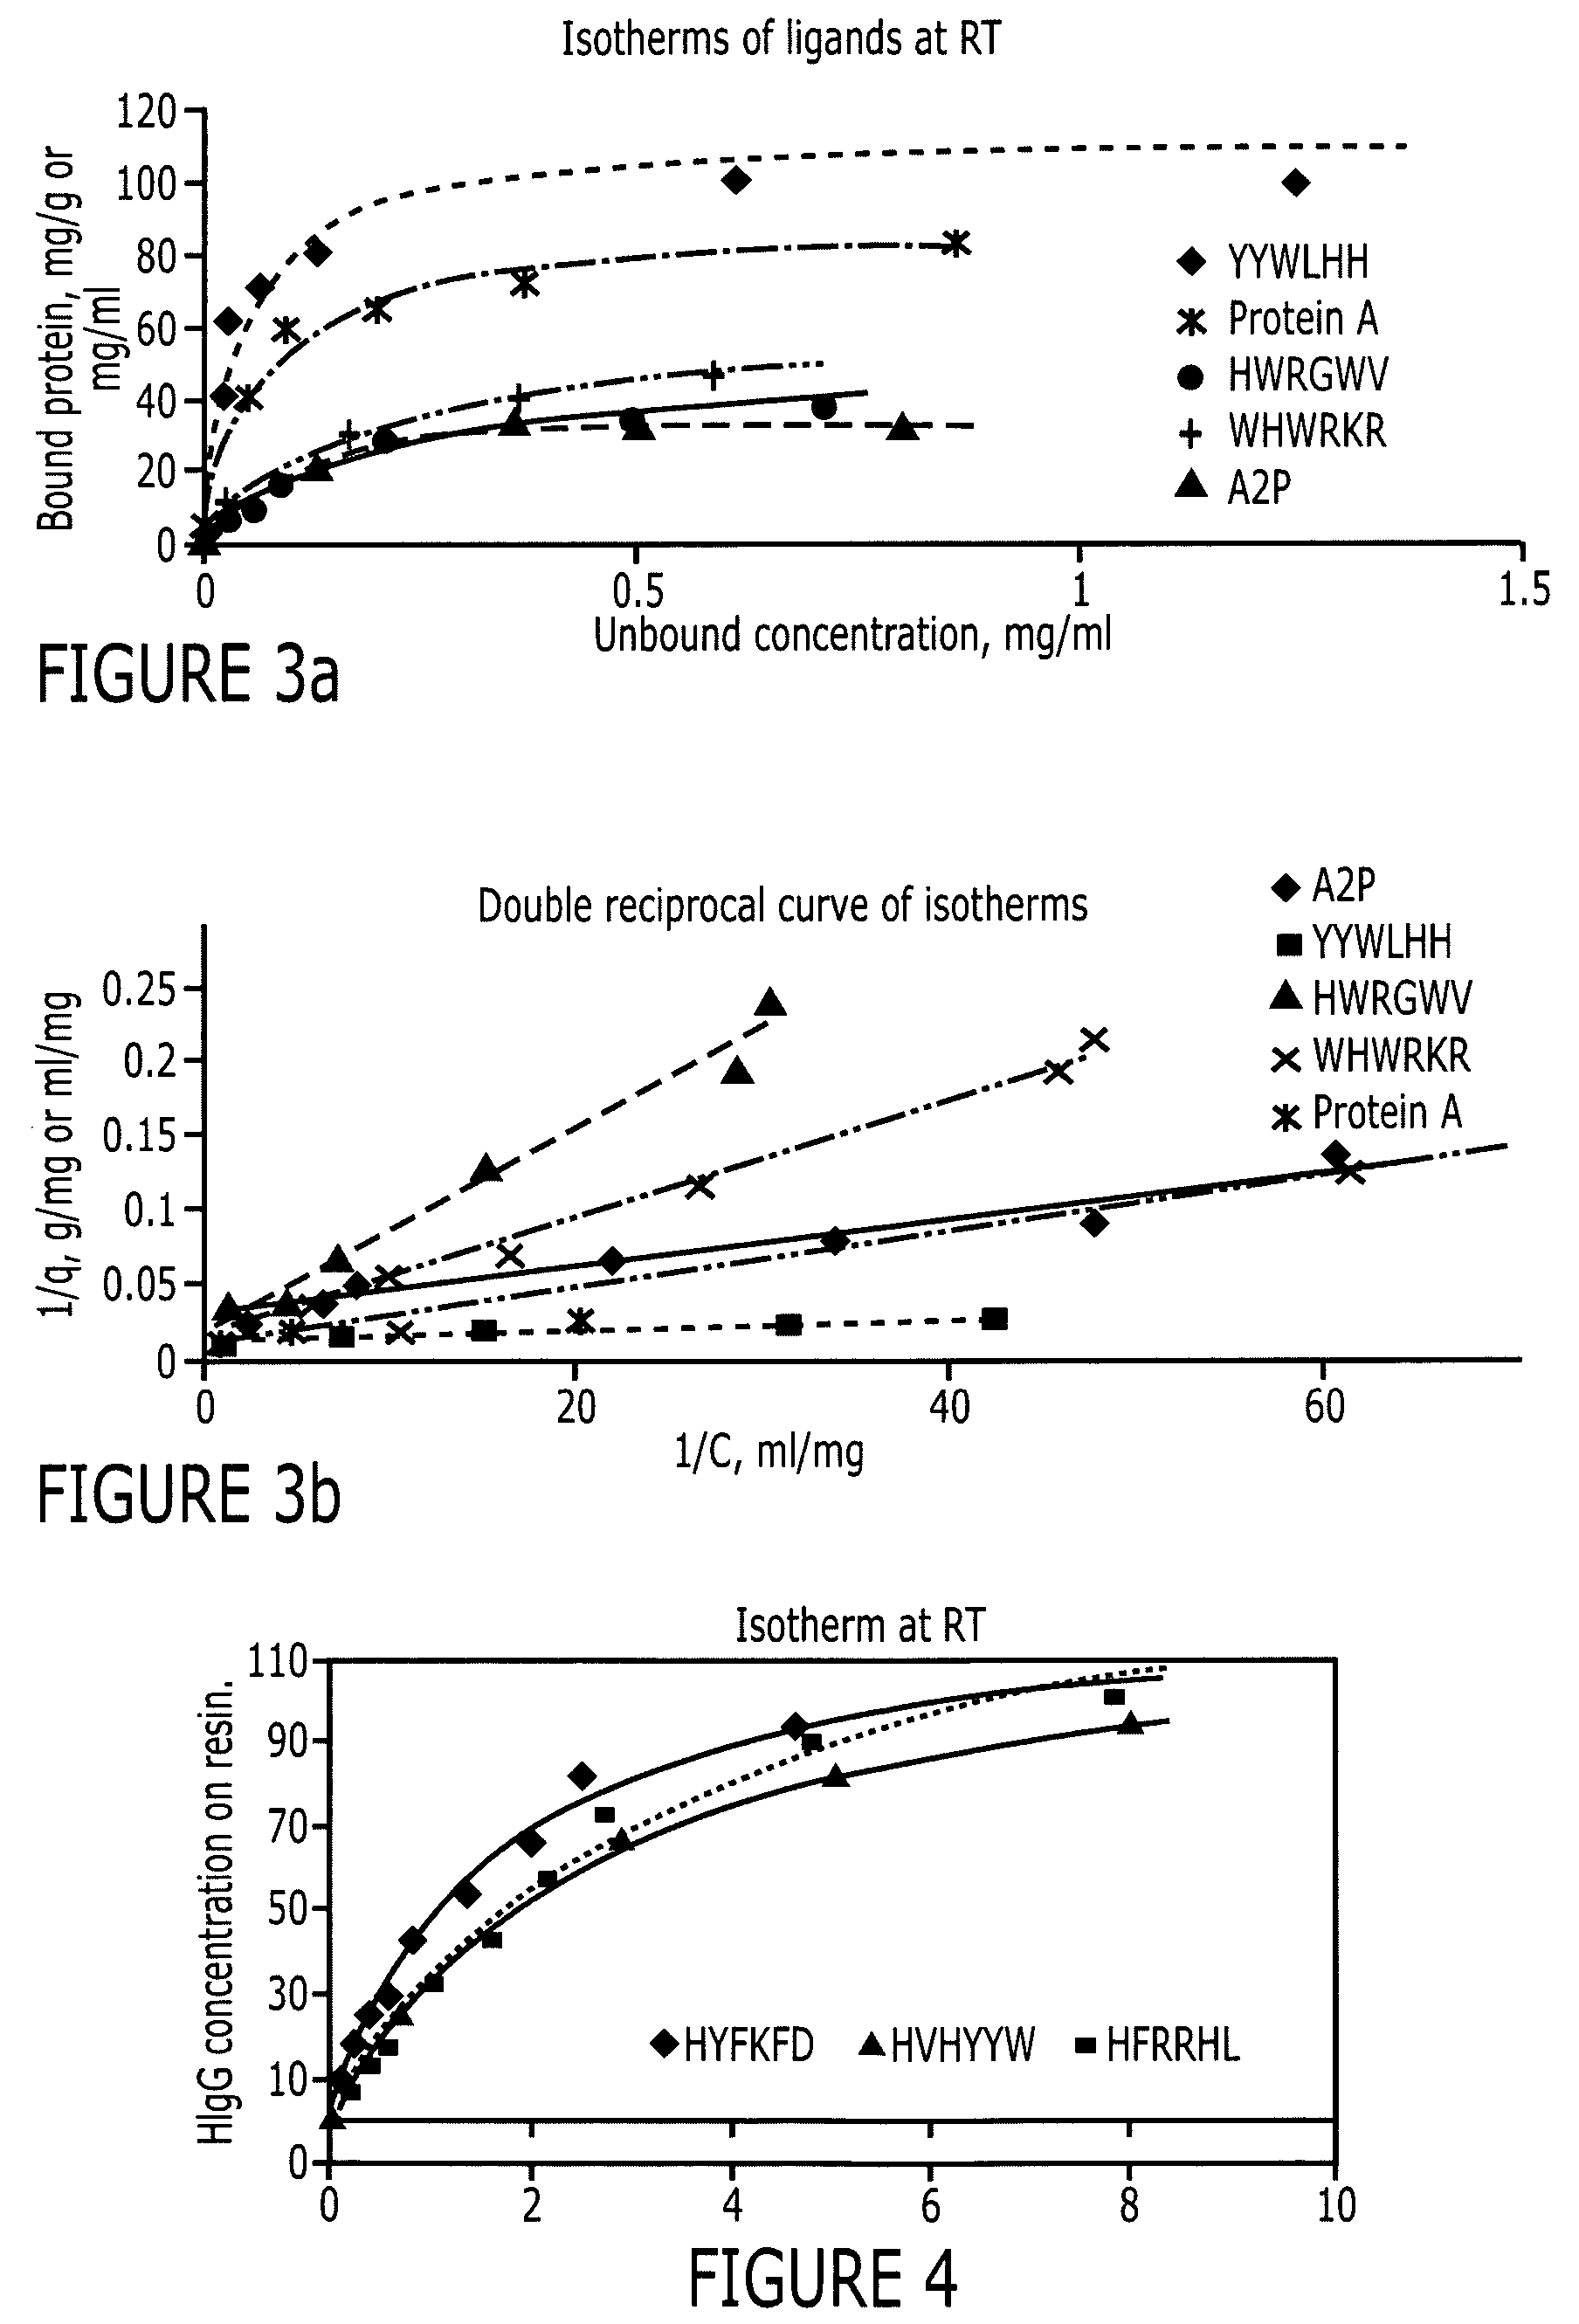 Purification of immunoglobulins using affinity chromatography and peptide ligands